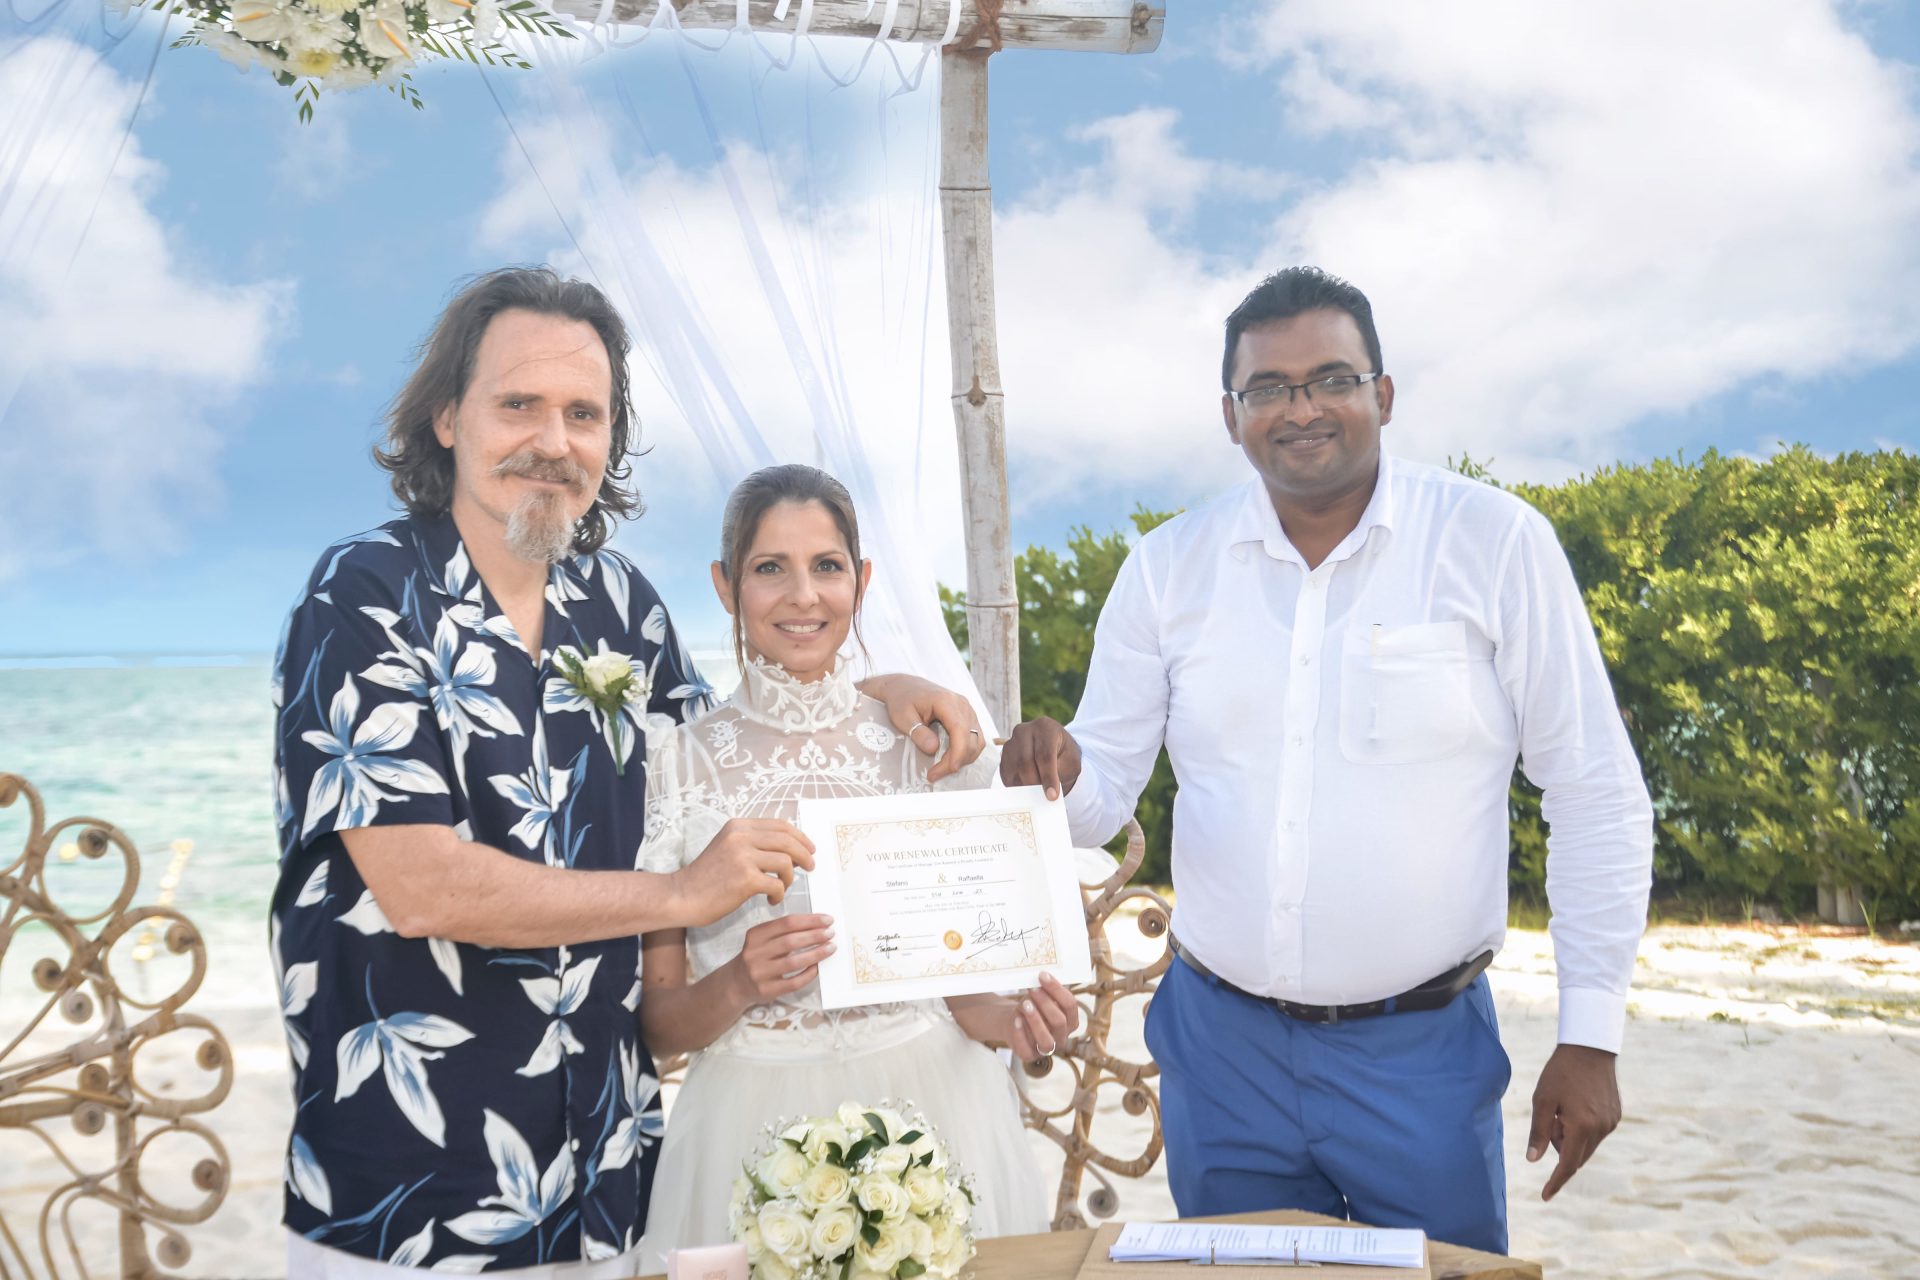 Matrimonio simbolico Mauritius tropici